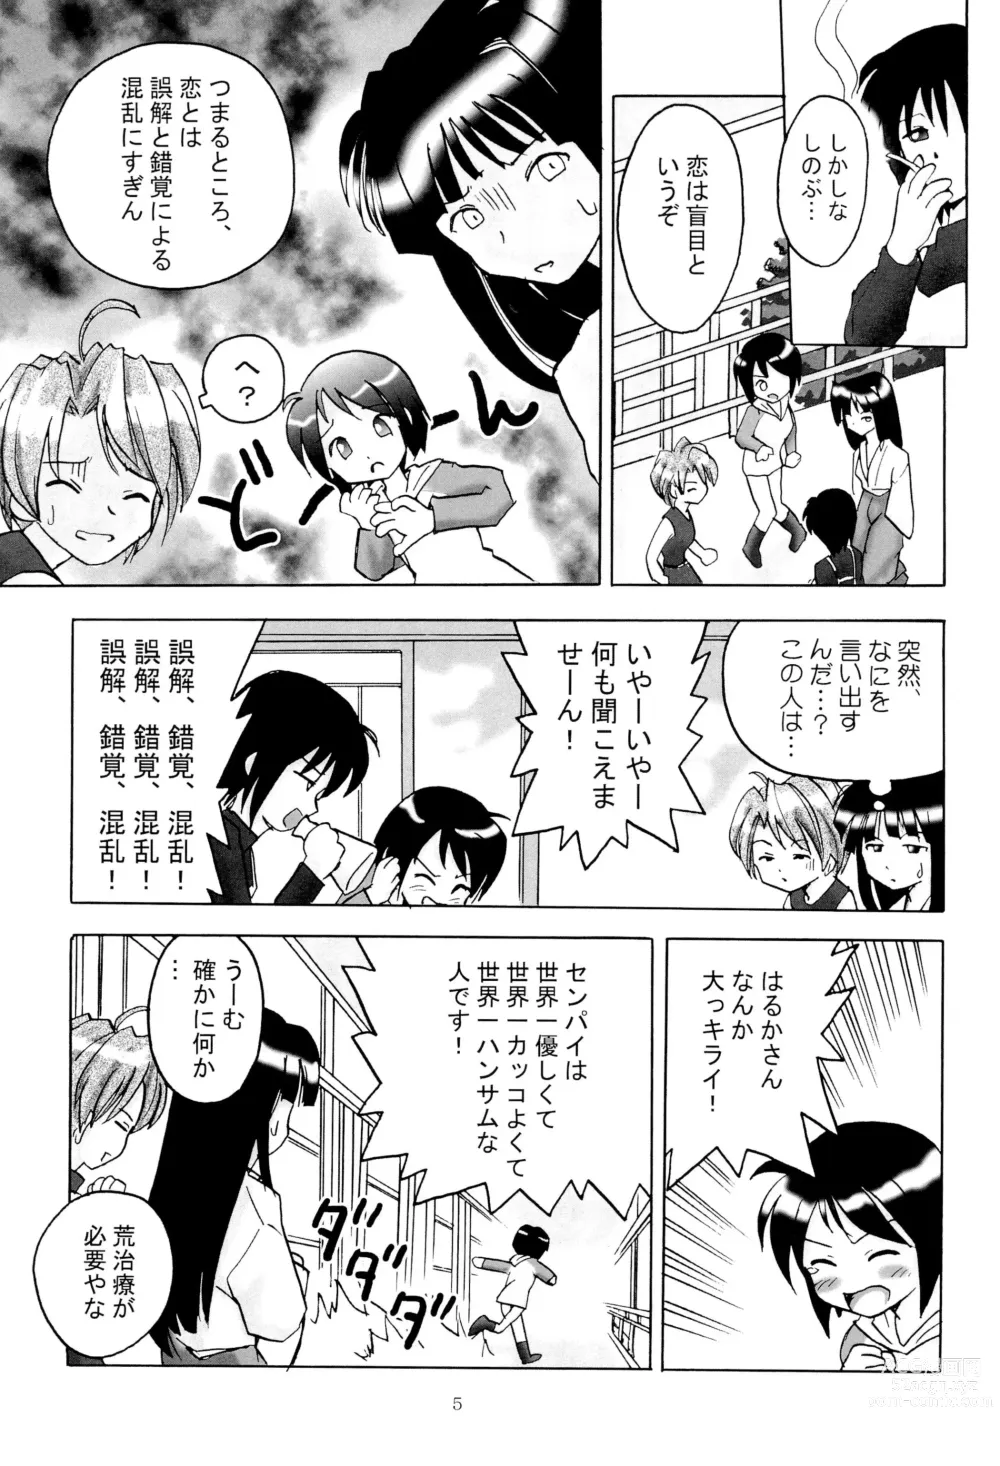 Page 7 of doujinshi Shino Buna